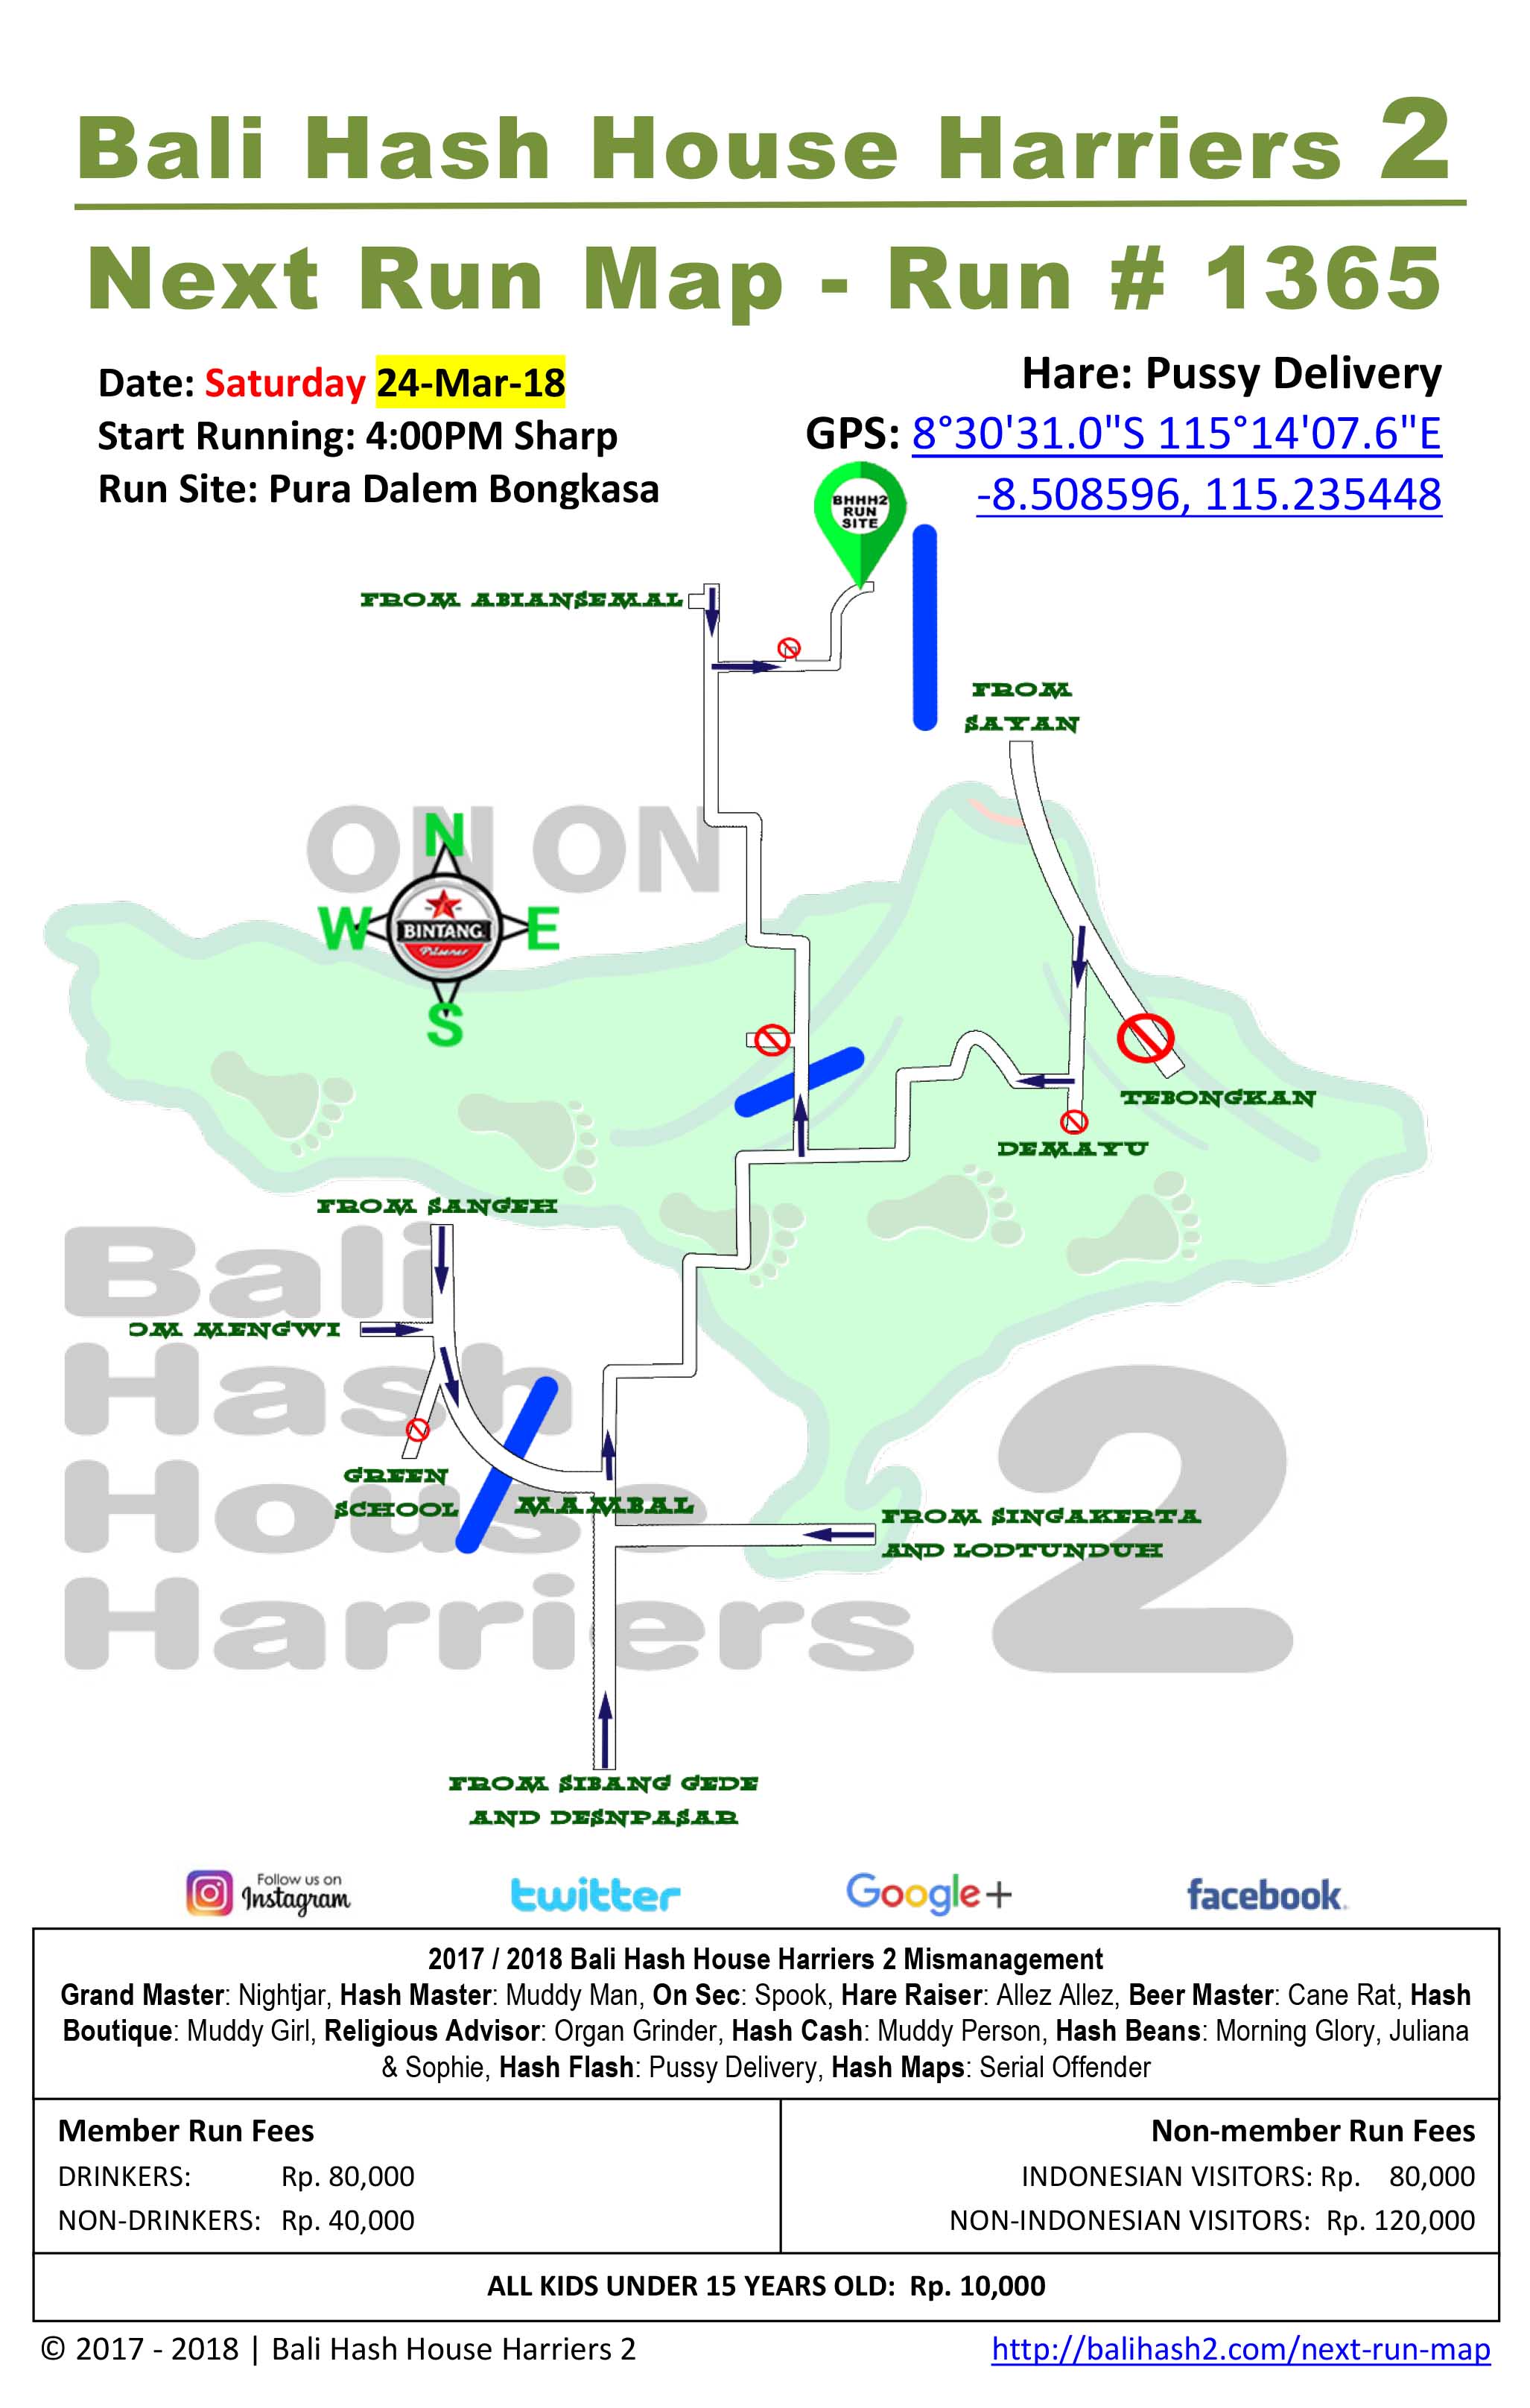 BHHH2 Next Run Map 1365 Pura Dalem Bongkasa Saturday 24-Mar-18